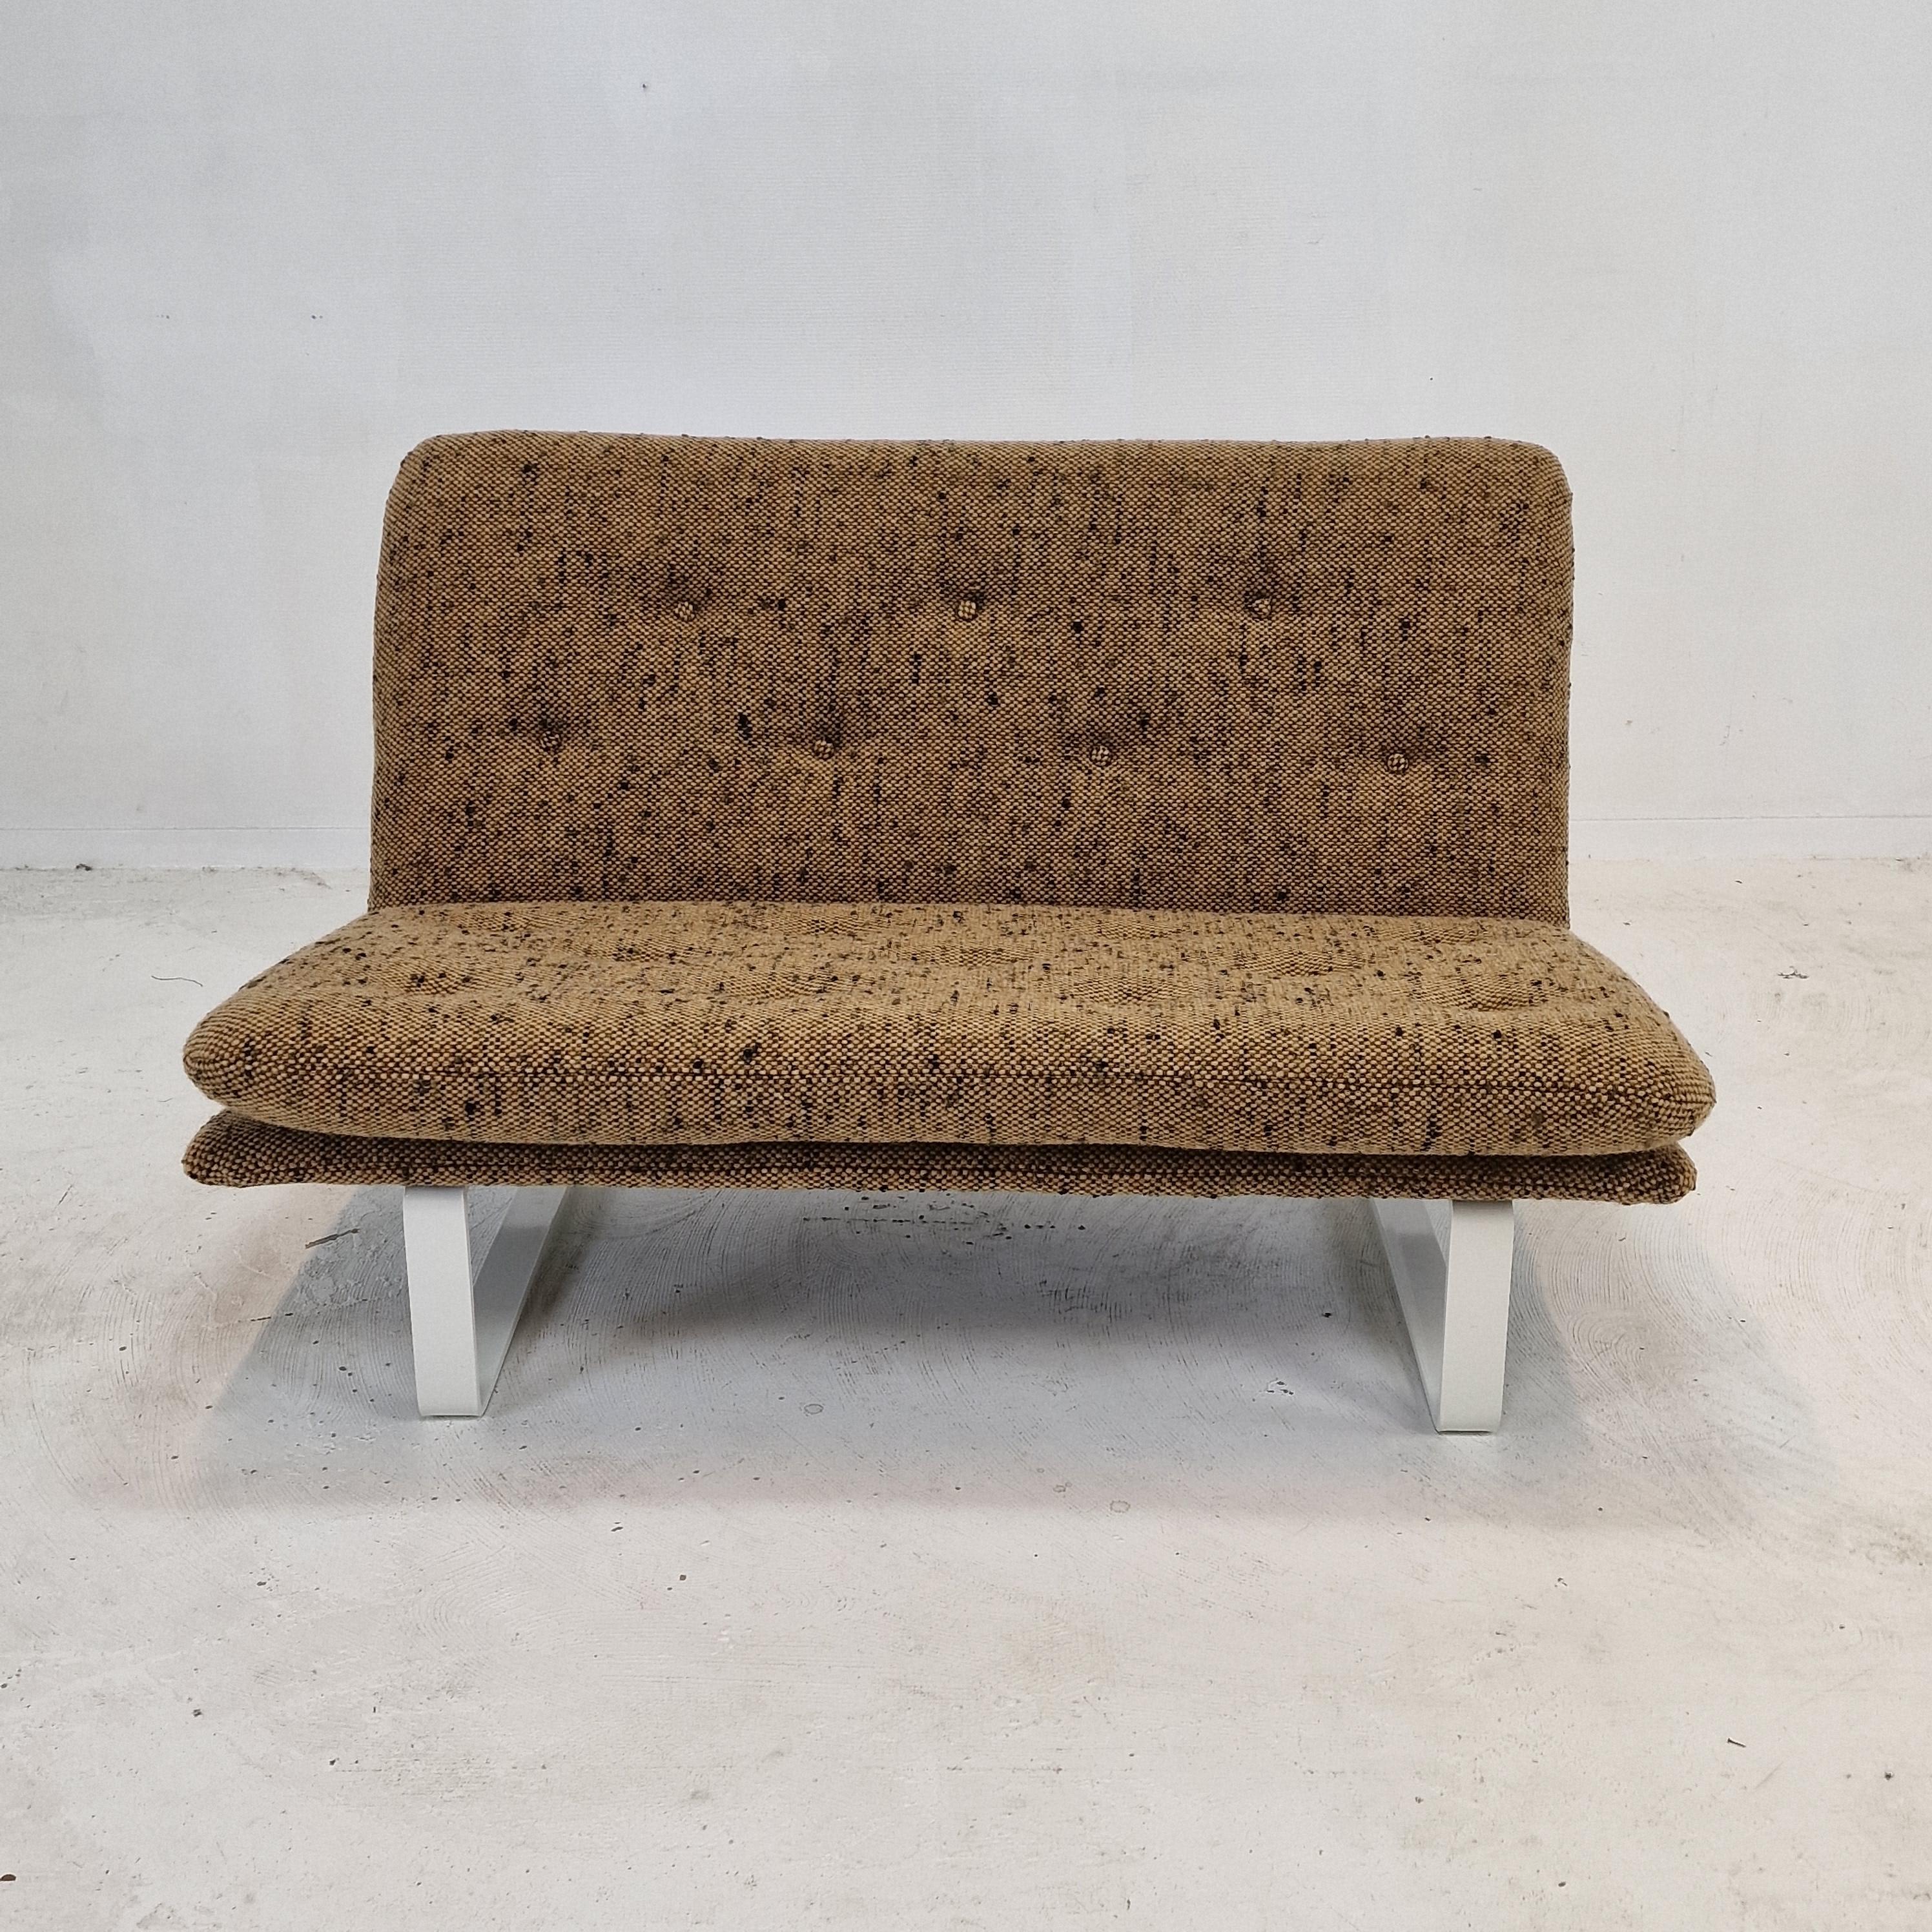 Wunderschönes und bequemes 2-Sitzer-Sofa von Kho Liang Ie. 
Hergestellt von Artifort in den 1960er Jahren. 

Sehr solide und qualitativ hochwertig, hergestellt aus den besten MATERIALEN.

Das Sofa wurde gerade mit einem fantastischen